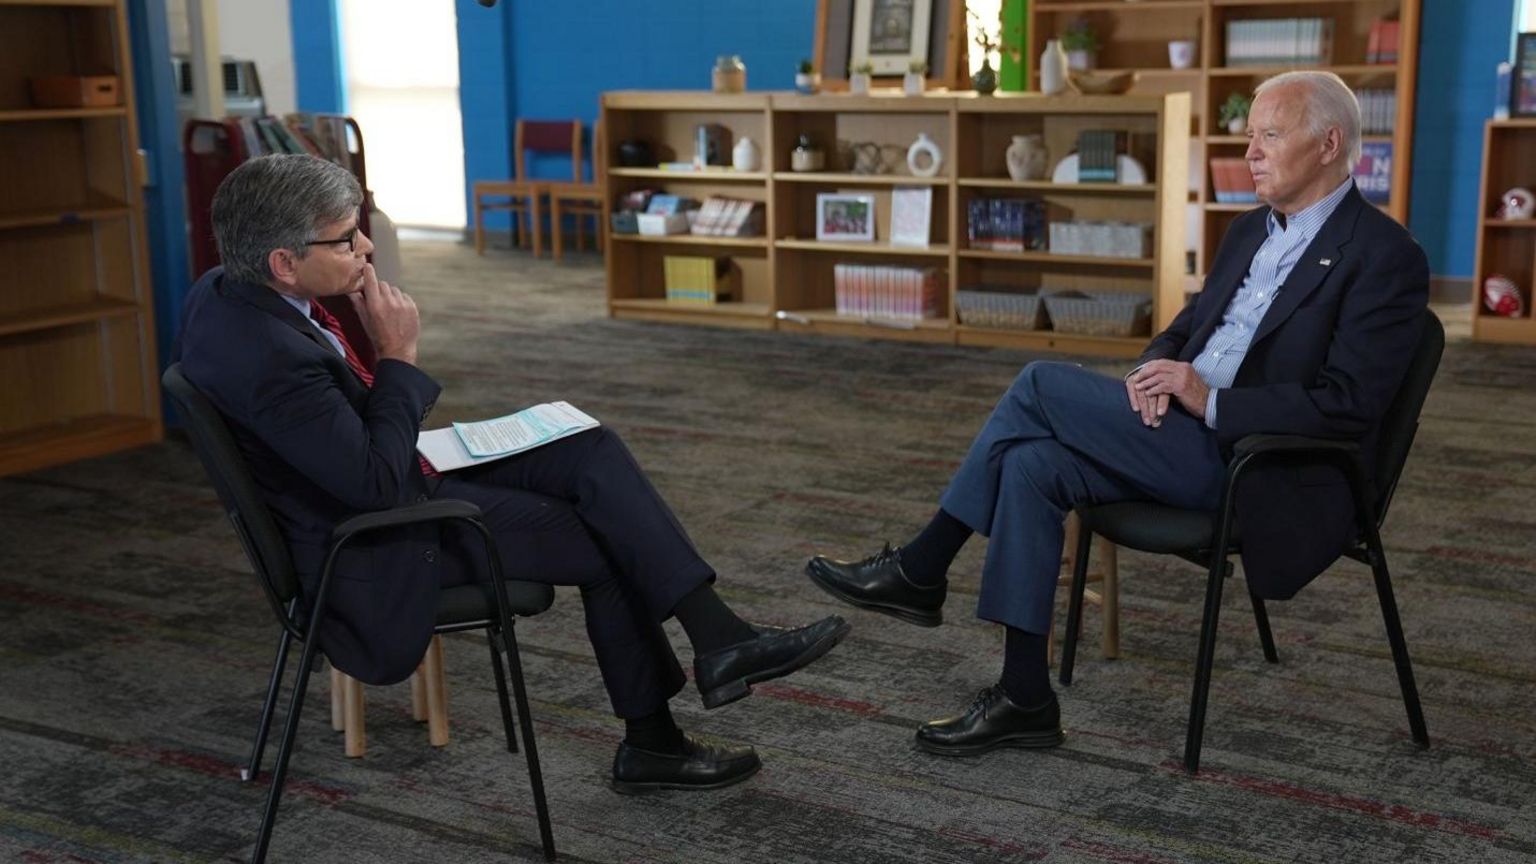 Joe Biden speaks with George Stephanopoulos